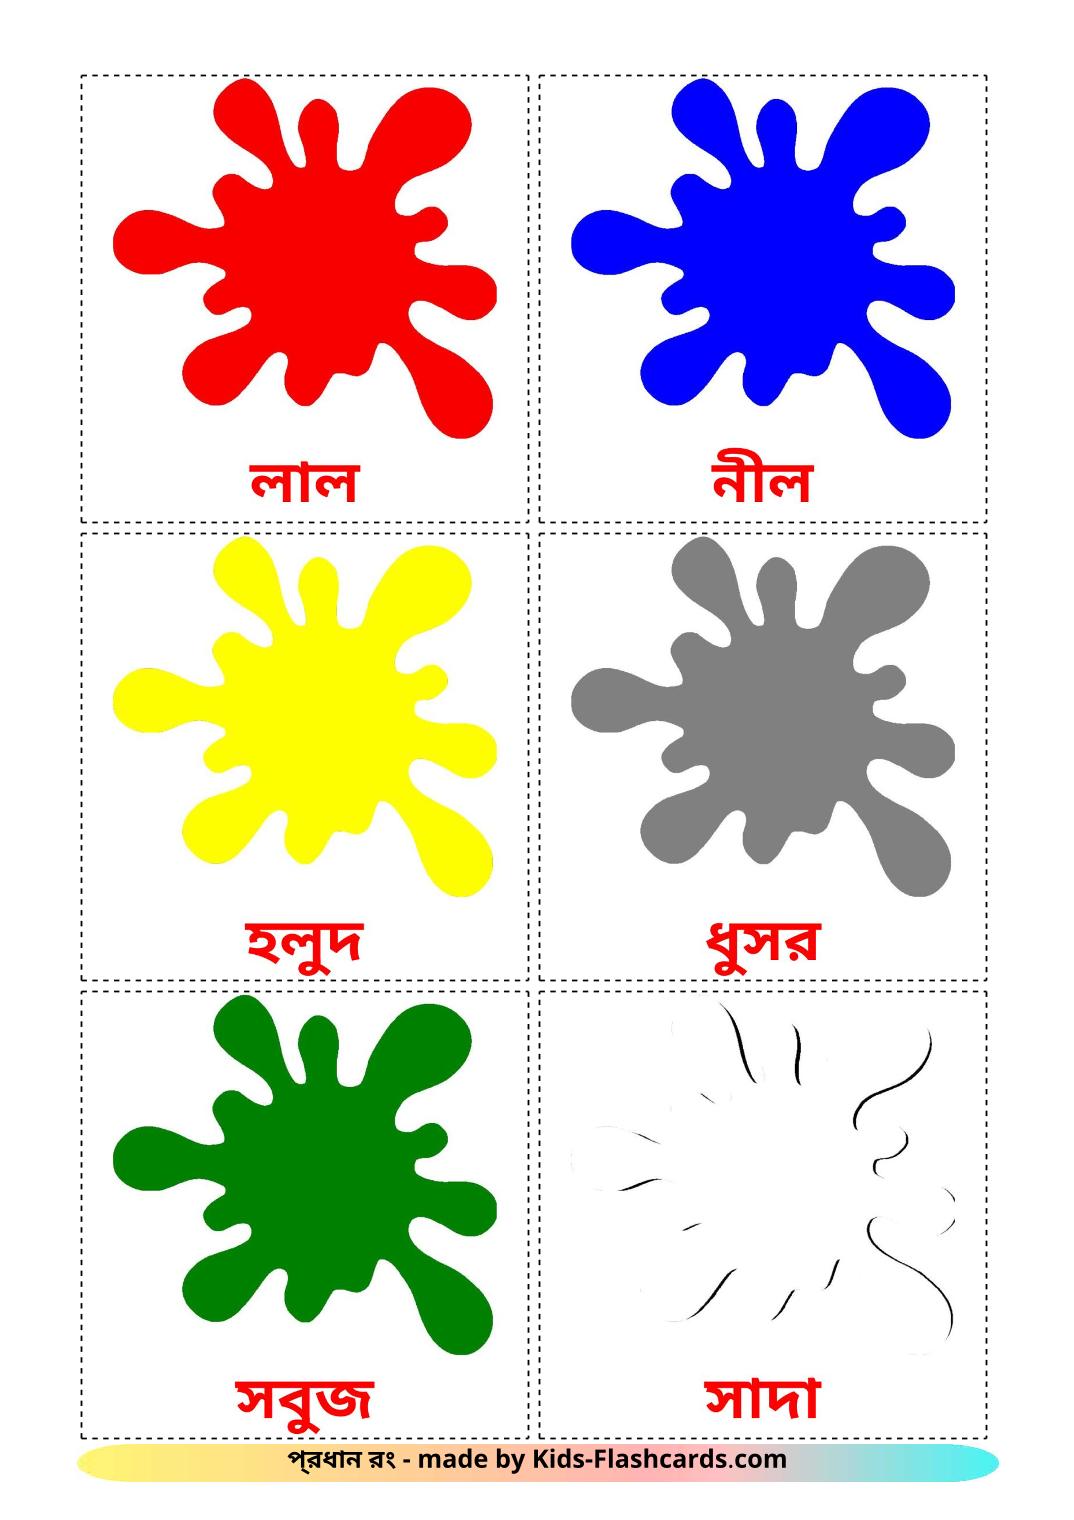 Colori di base - 12 flashcards bengalese stampabili gratuitamente